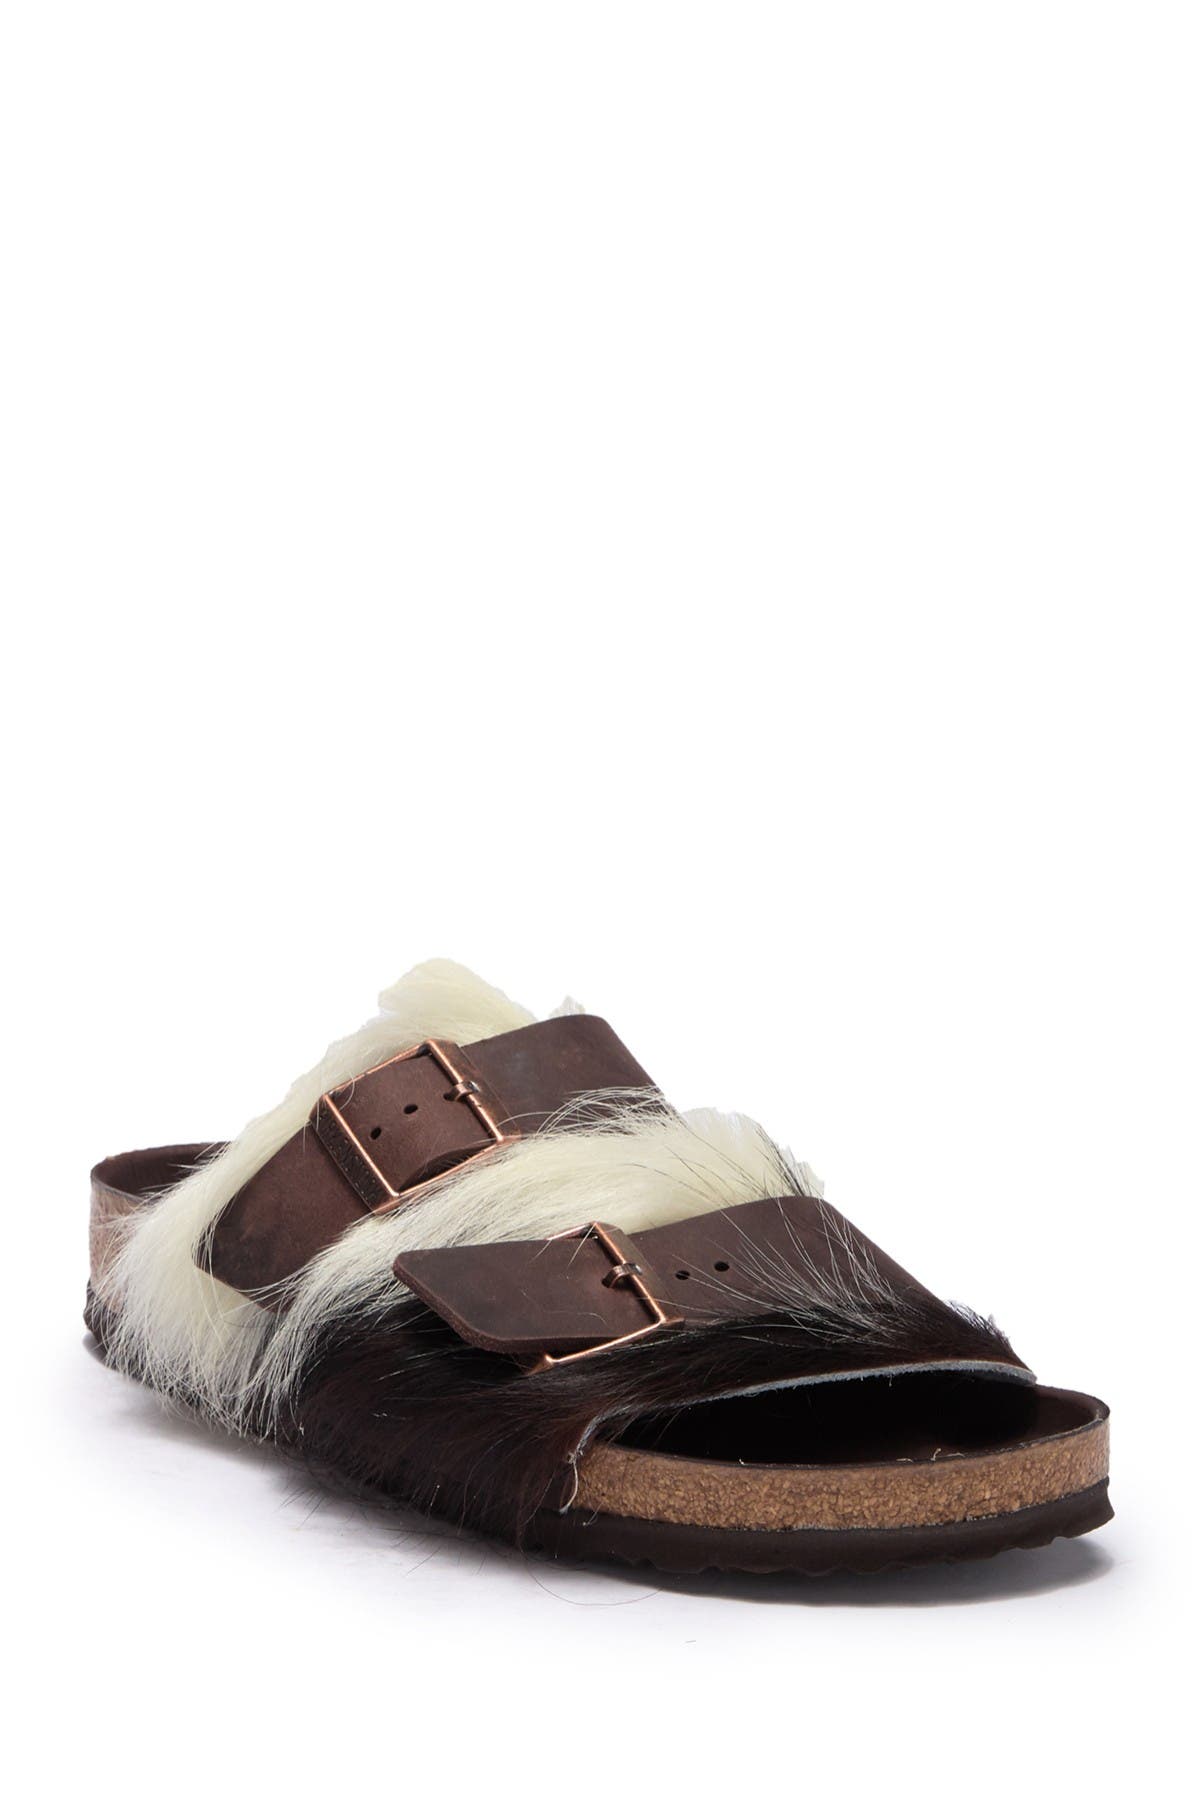 fur birkenstock sandals